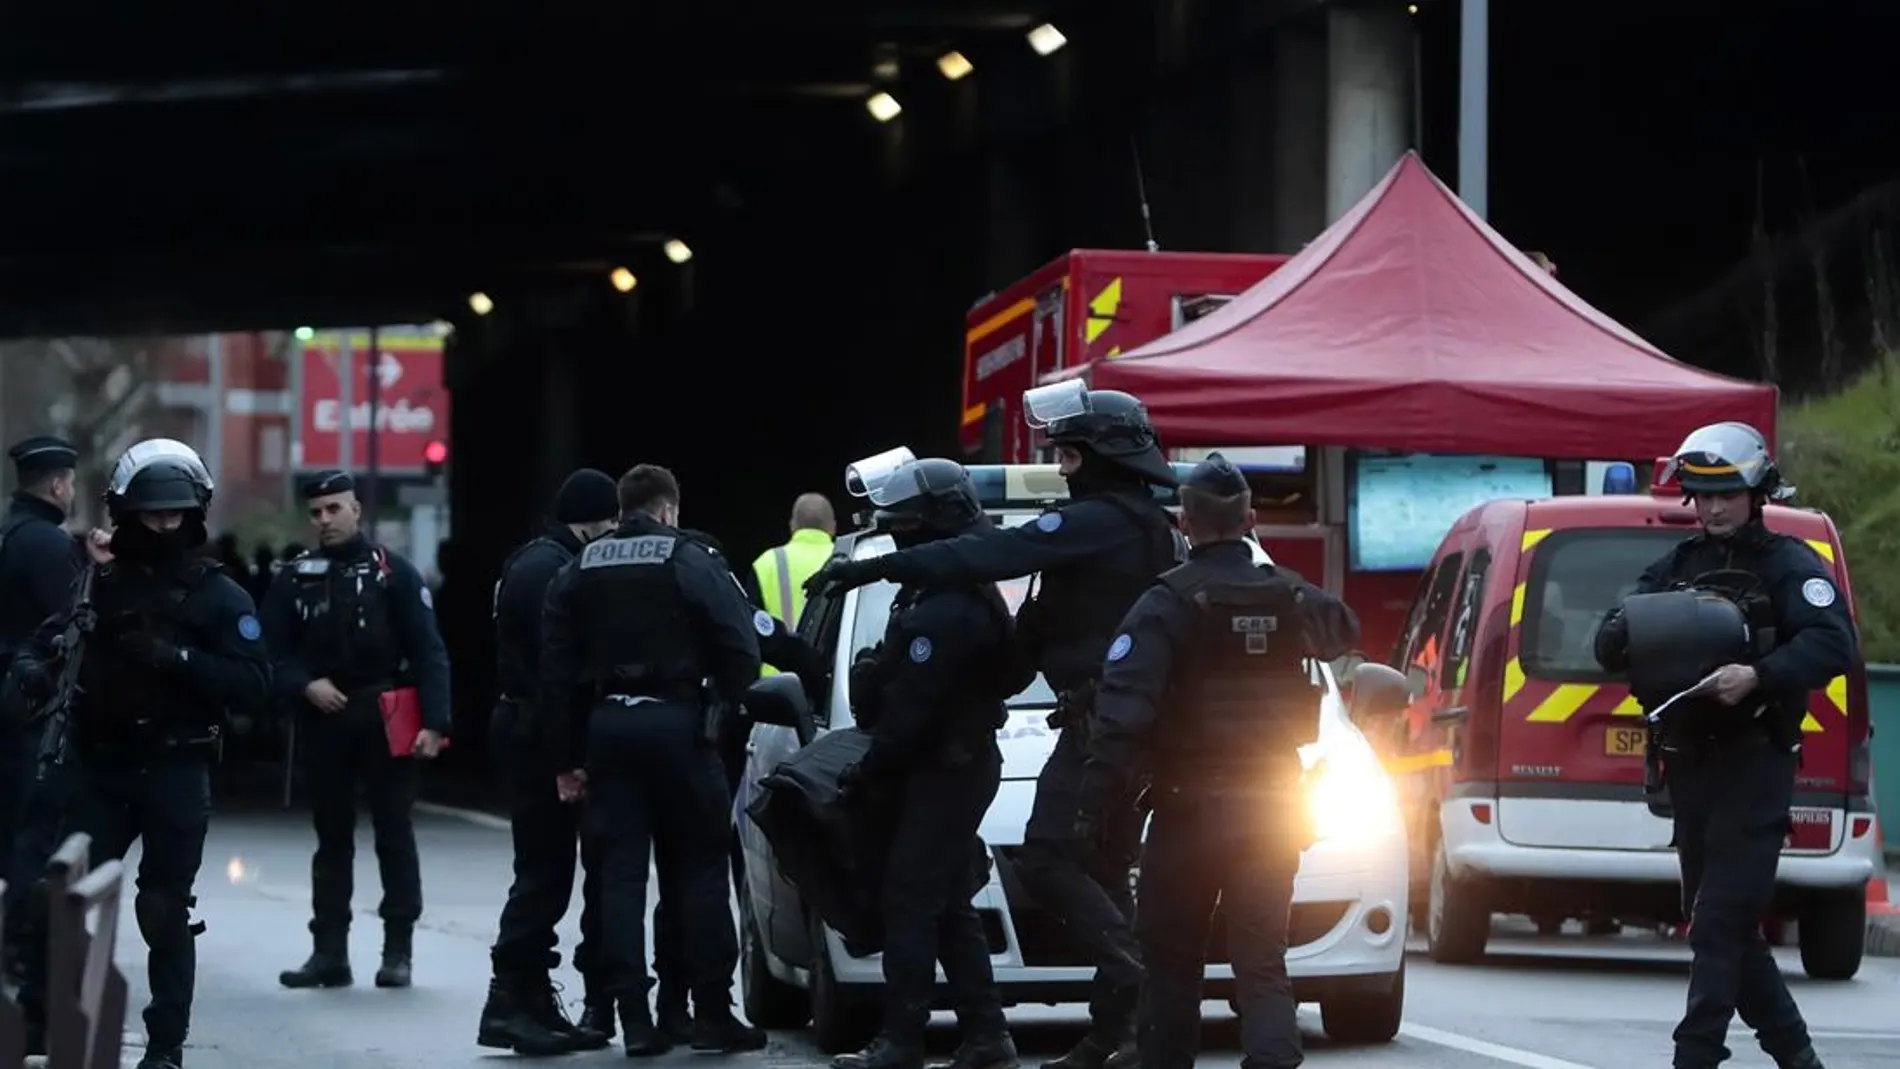 Inmediaciones del lugar en el que un hombre ha atacado a varias personas en París